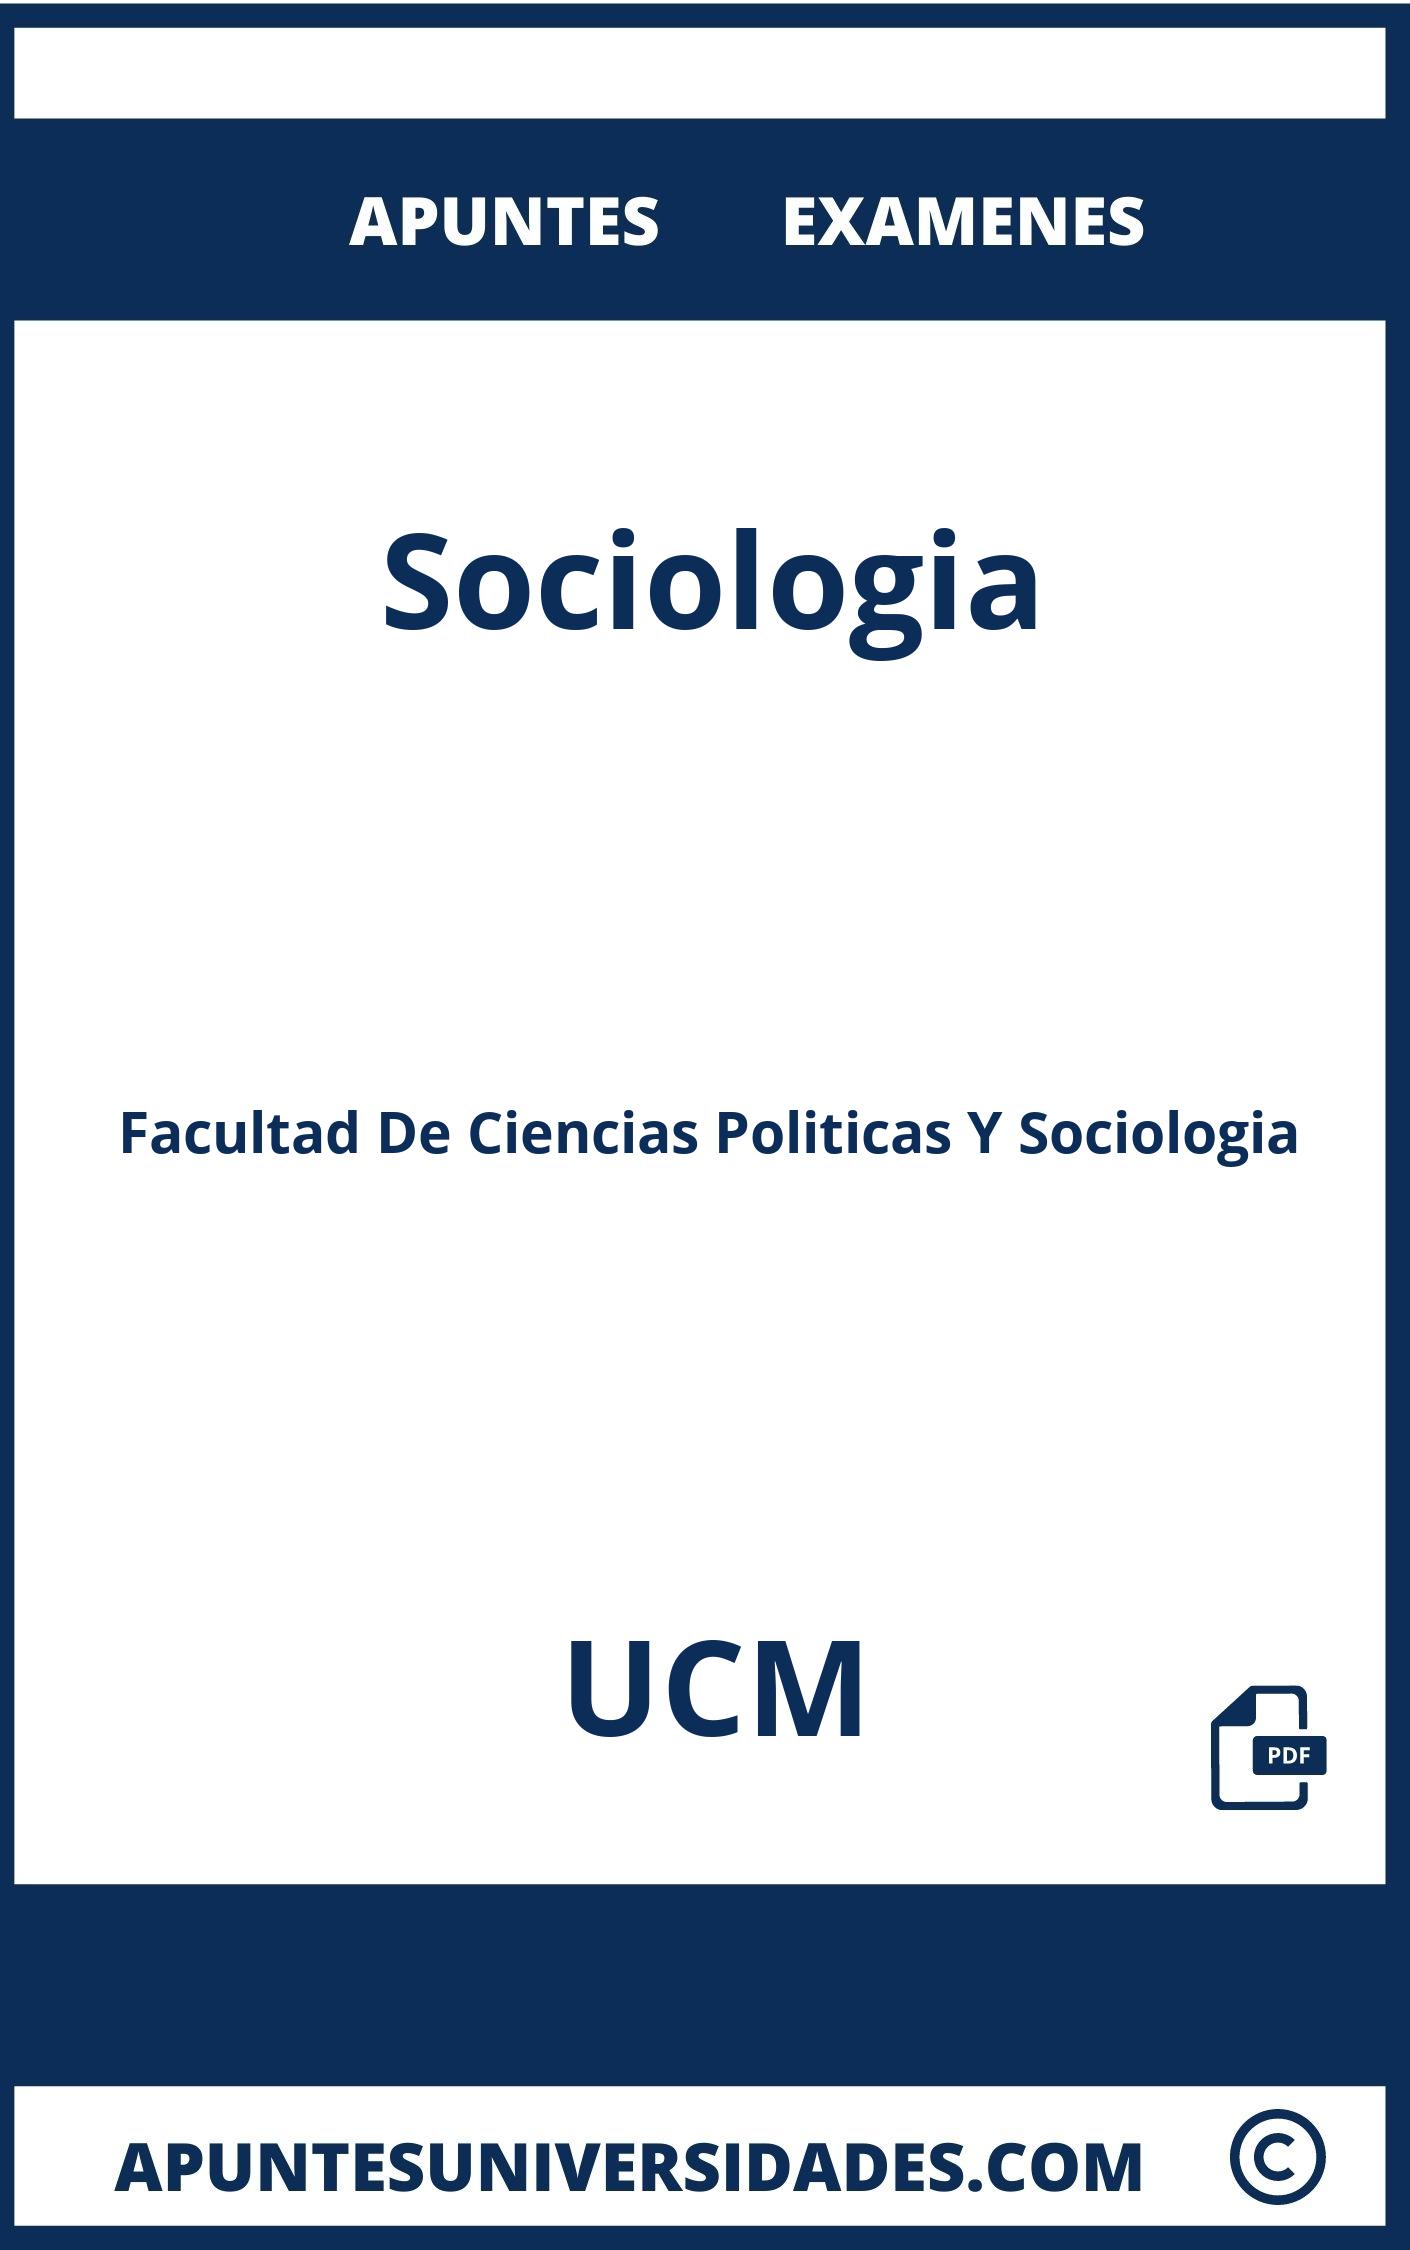 Examenes y Apuntes de Sociologia UCM